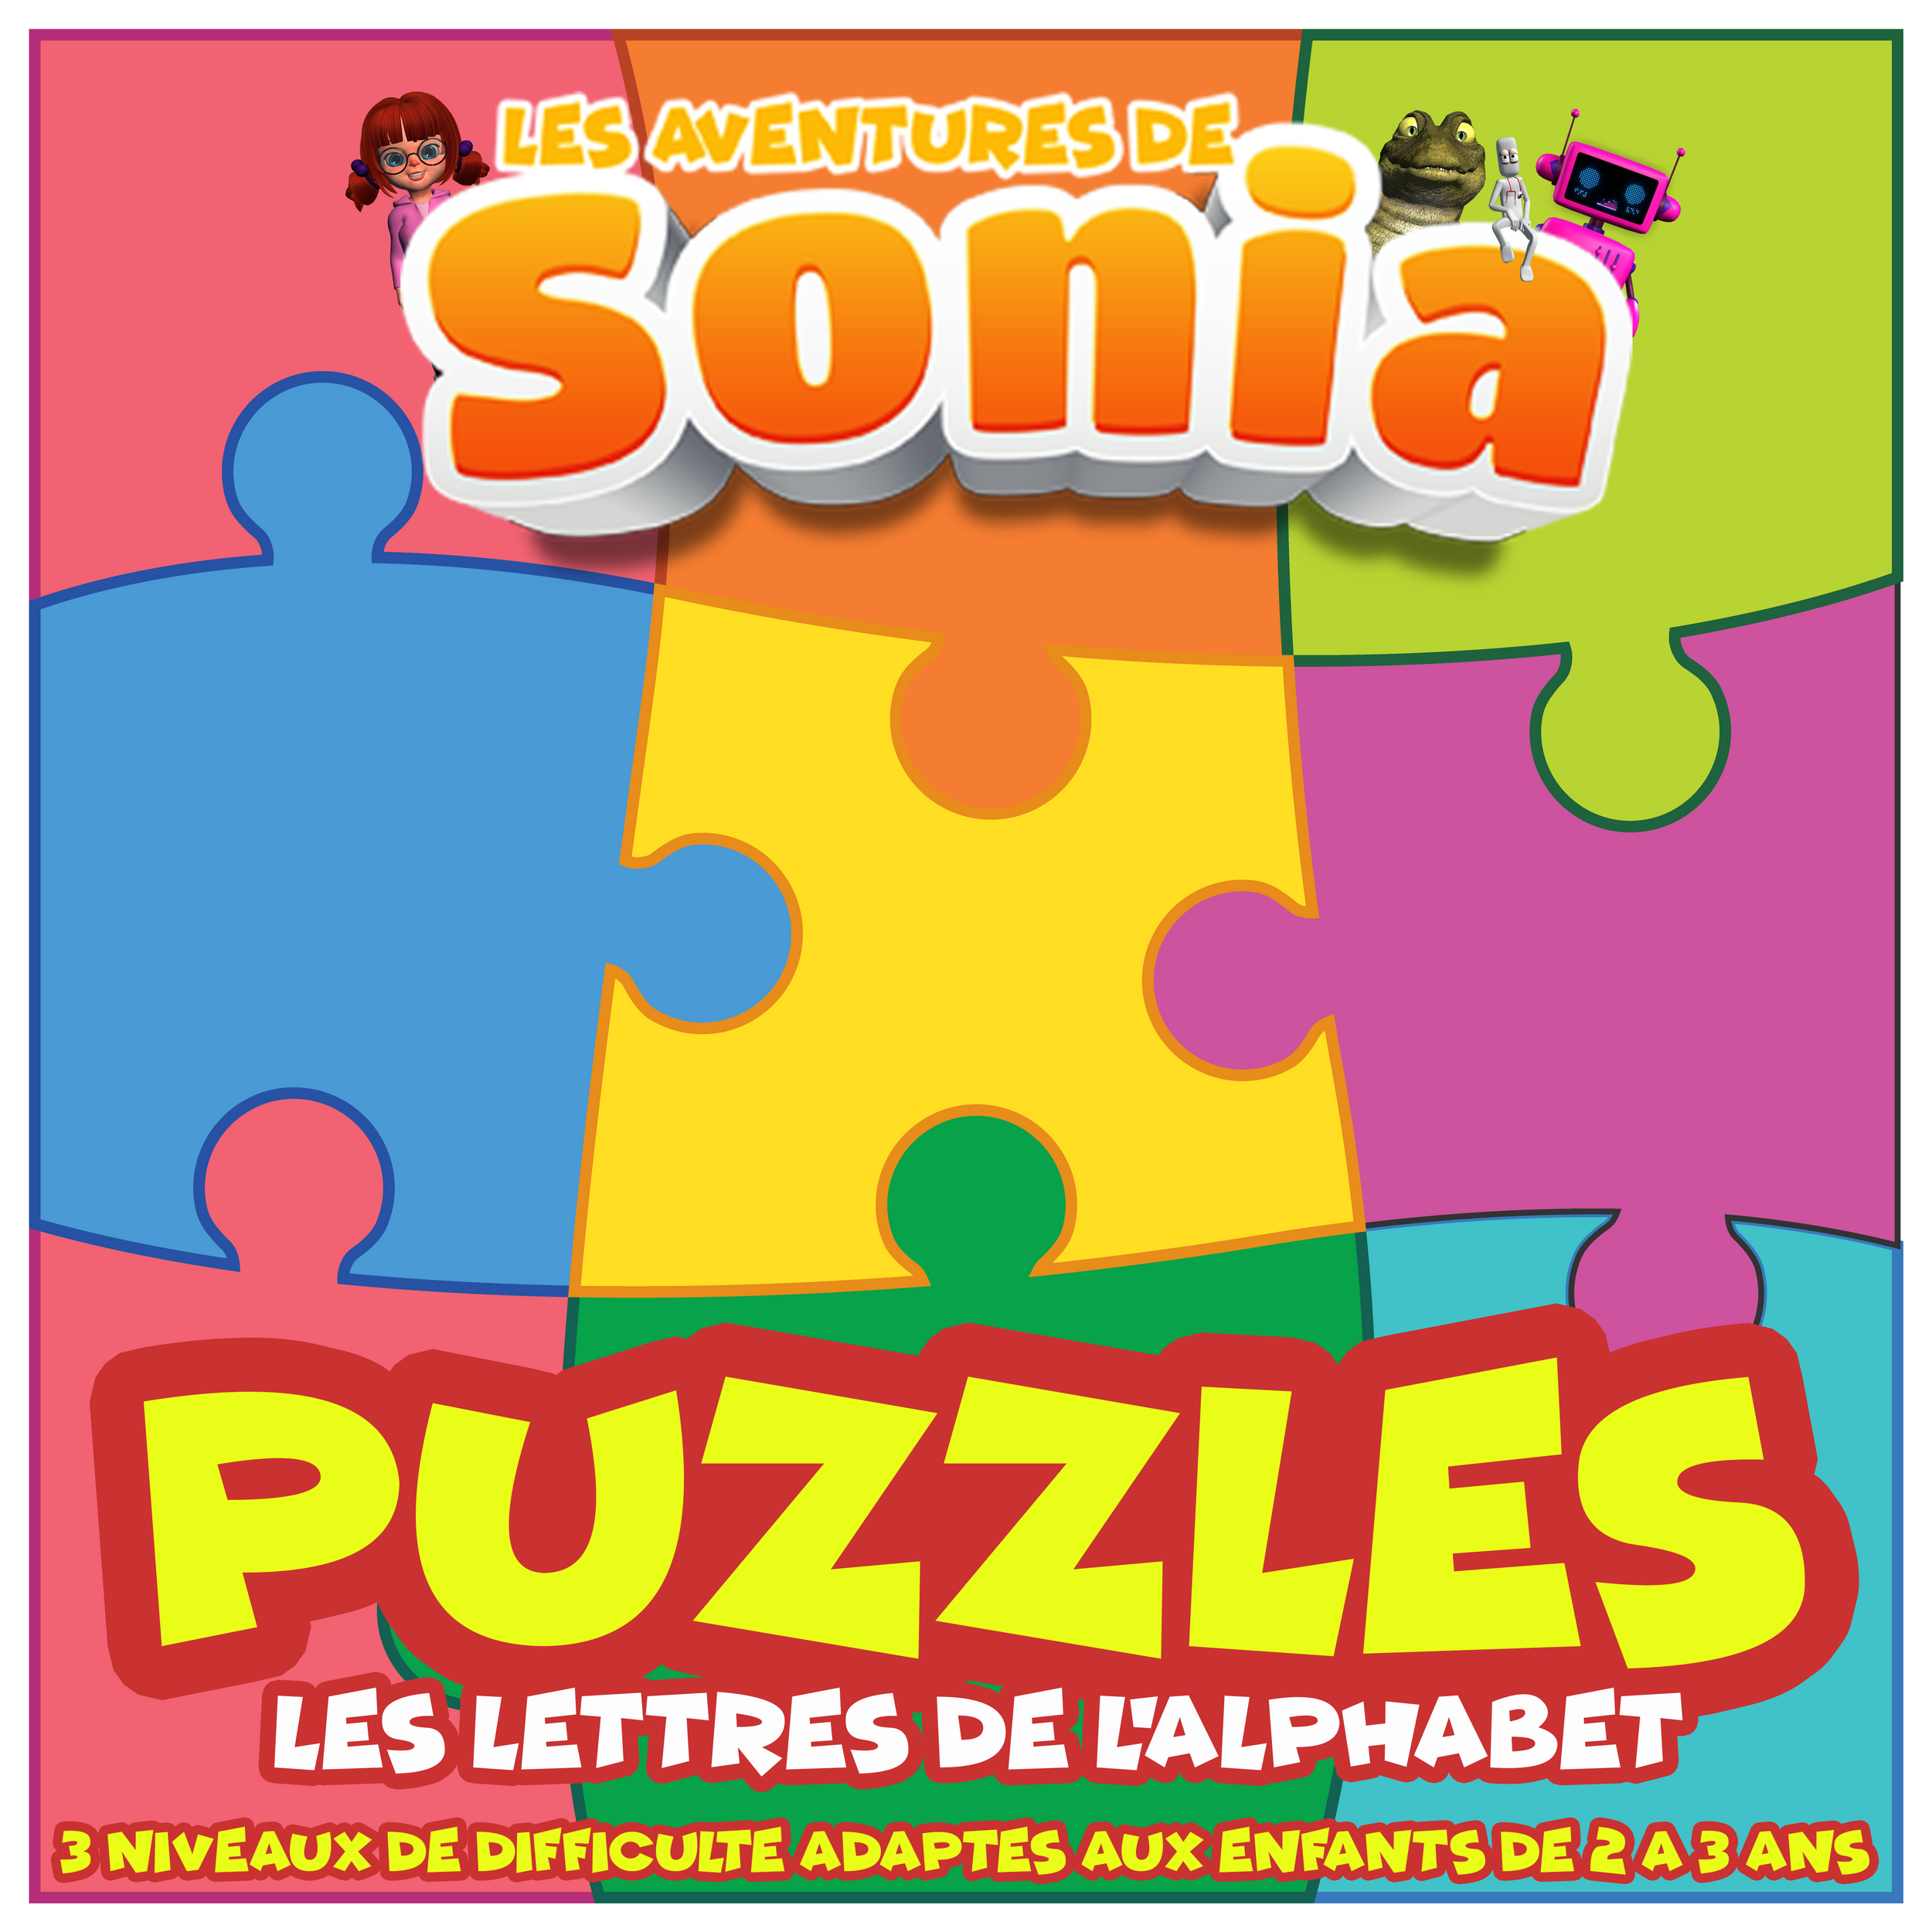 Puzzles les lettres de l'alphabet